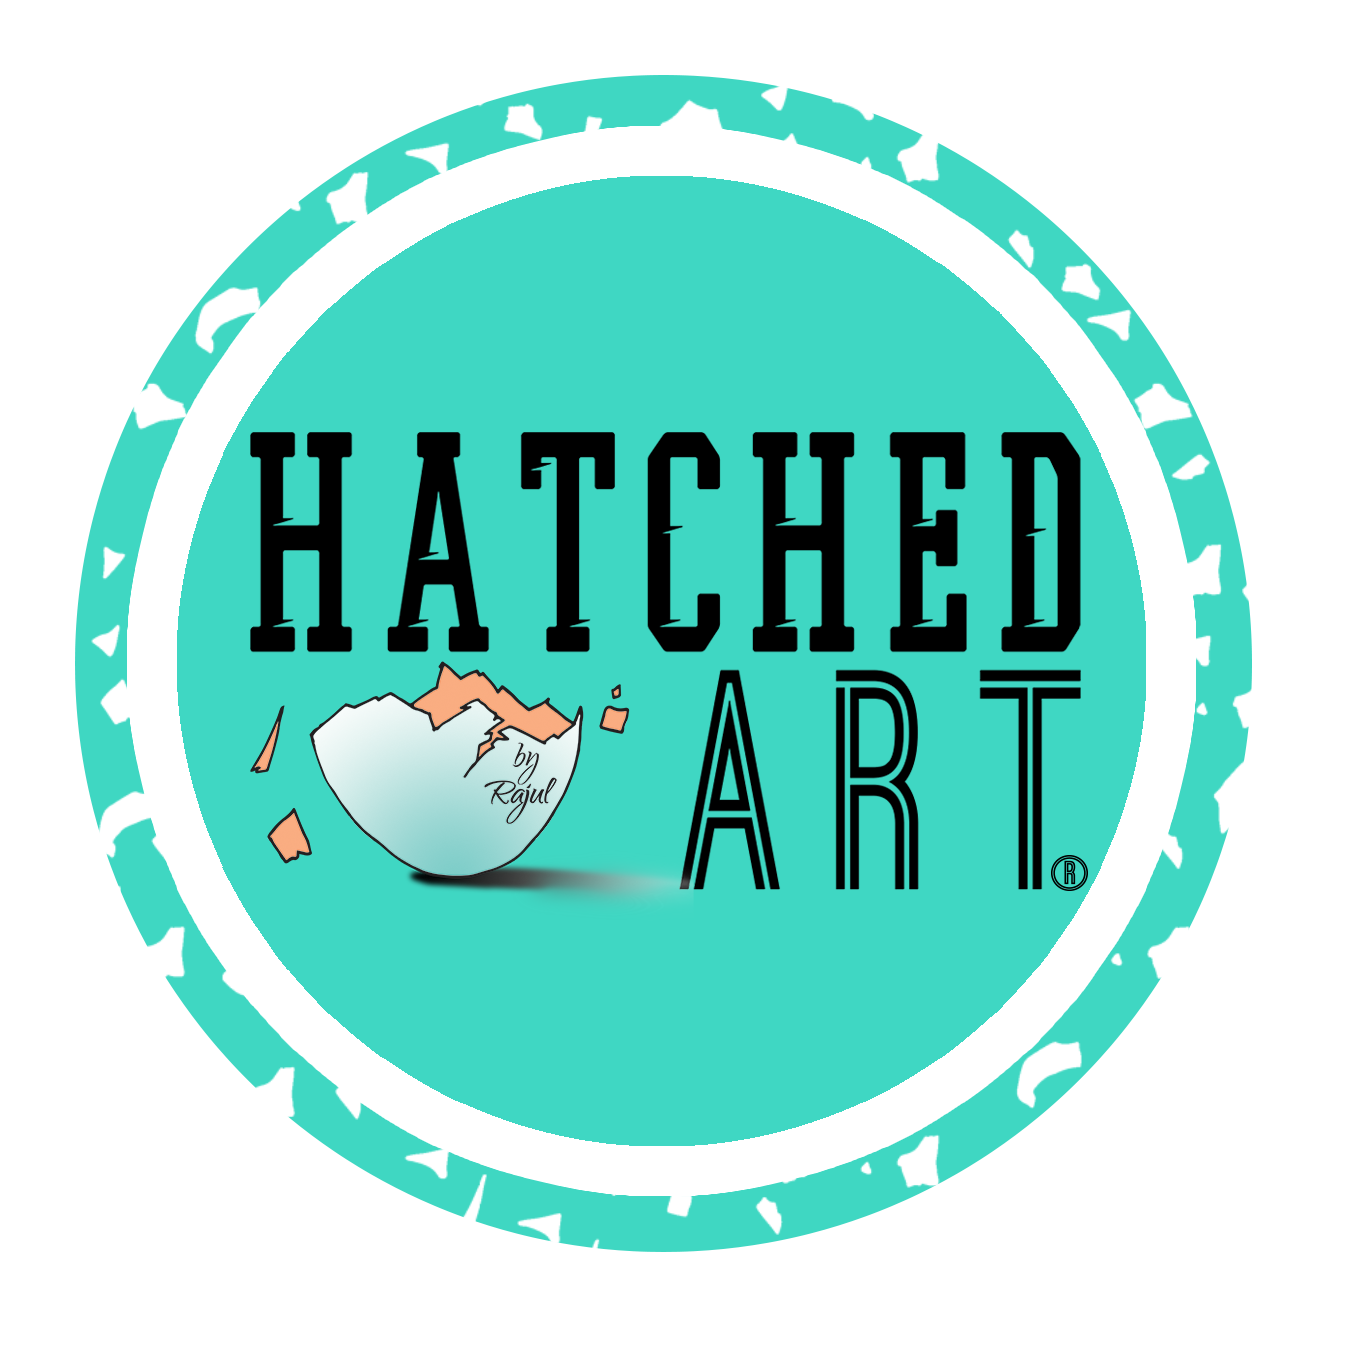 Hatched Art Jan 2020 Logo